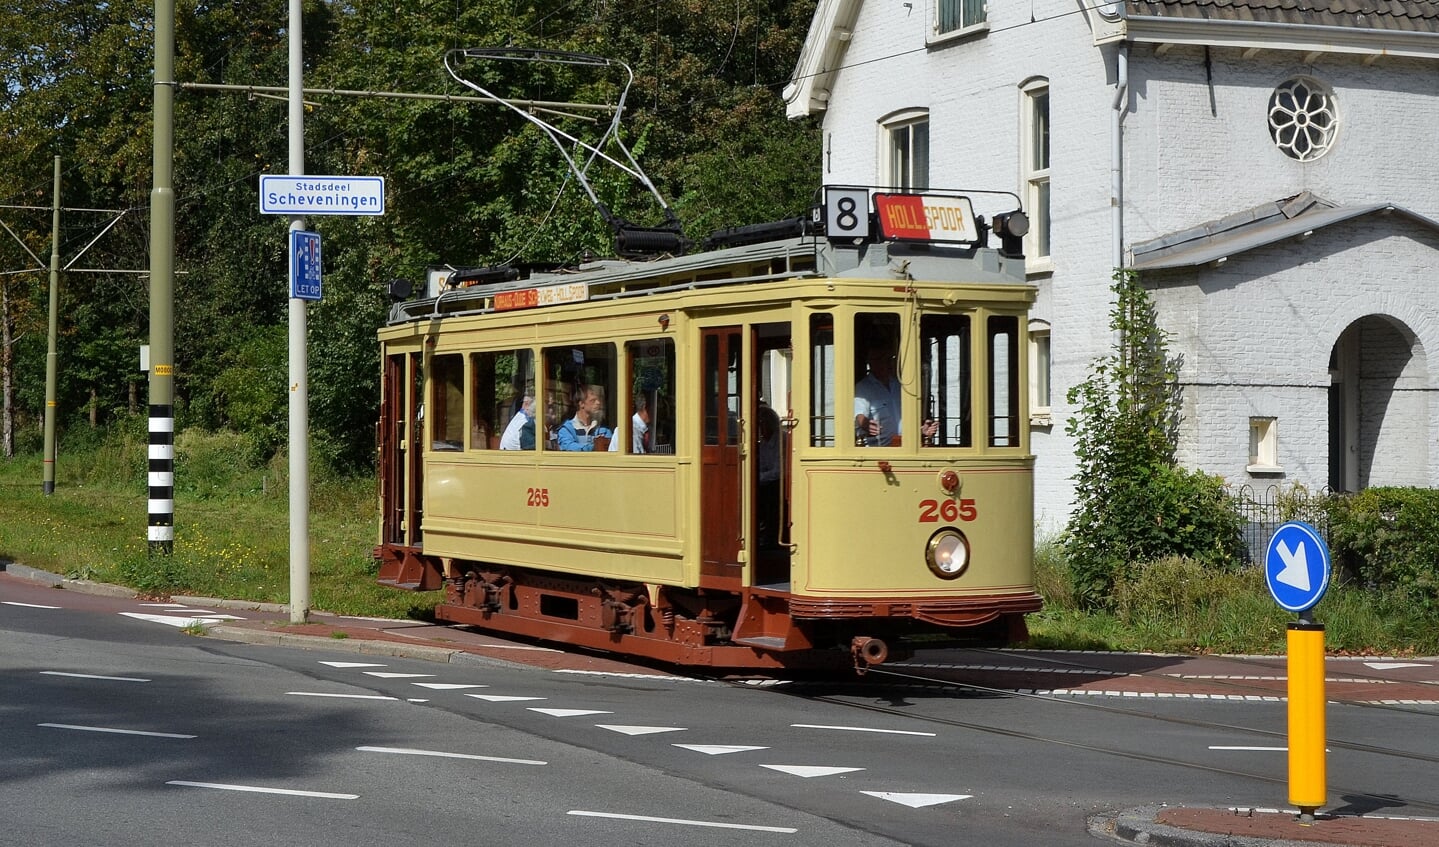 De historische tram 265 uit 1920 rijdt op Koningsdag ritten door de binnenstad.  